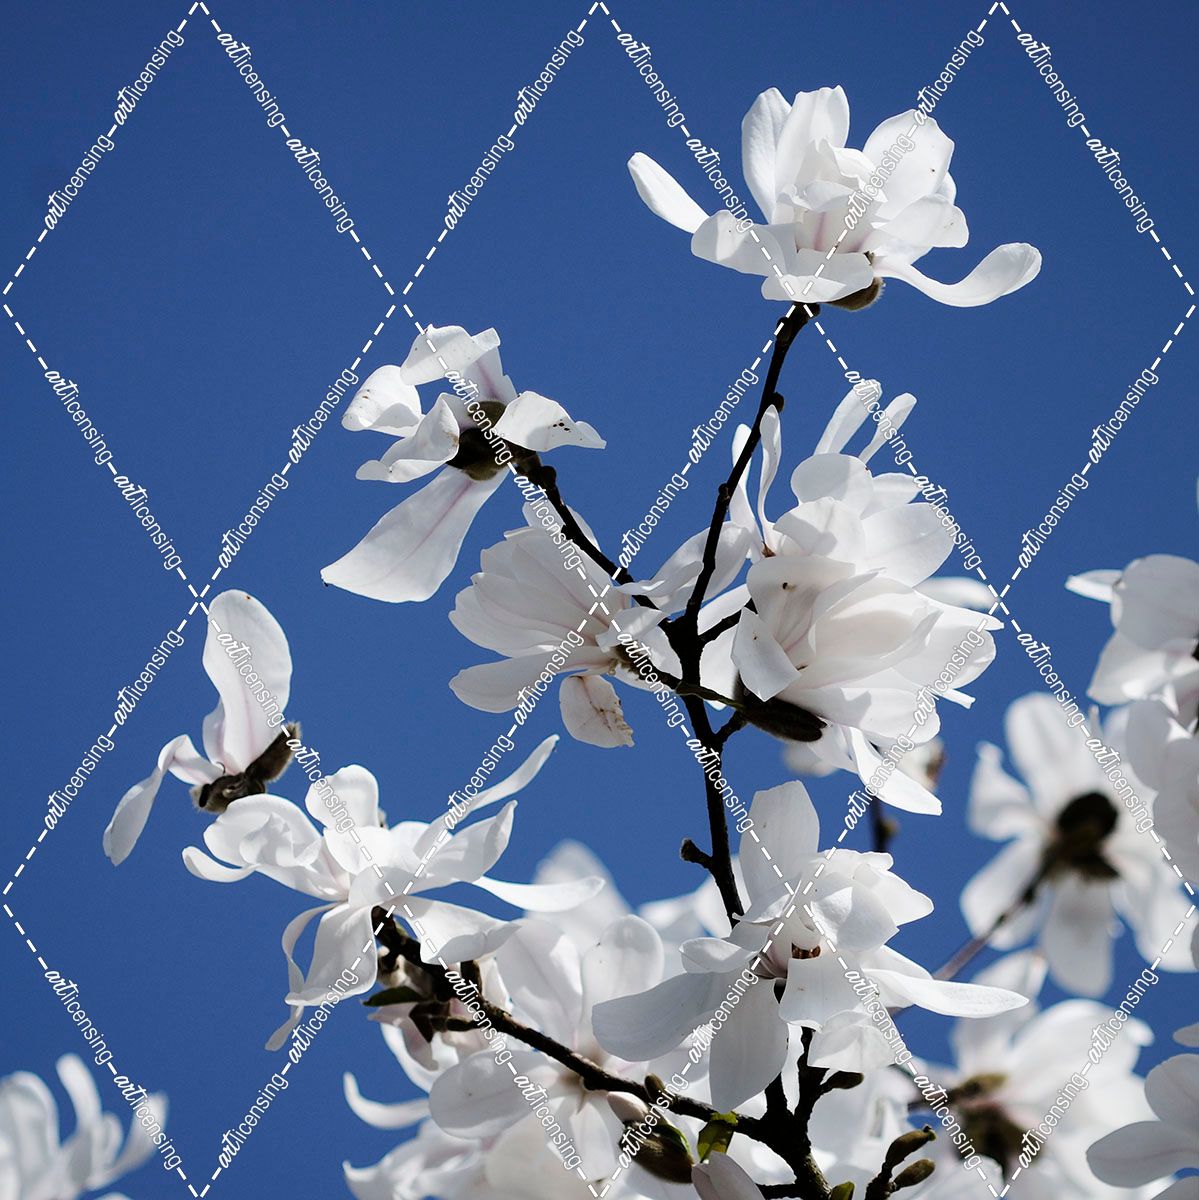 Spring Blossom on Tree 007